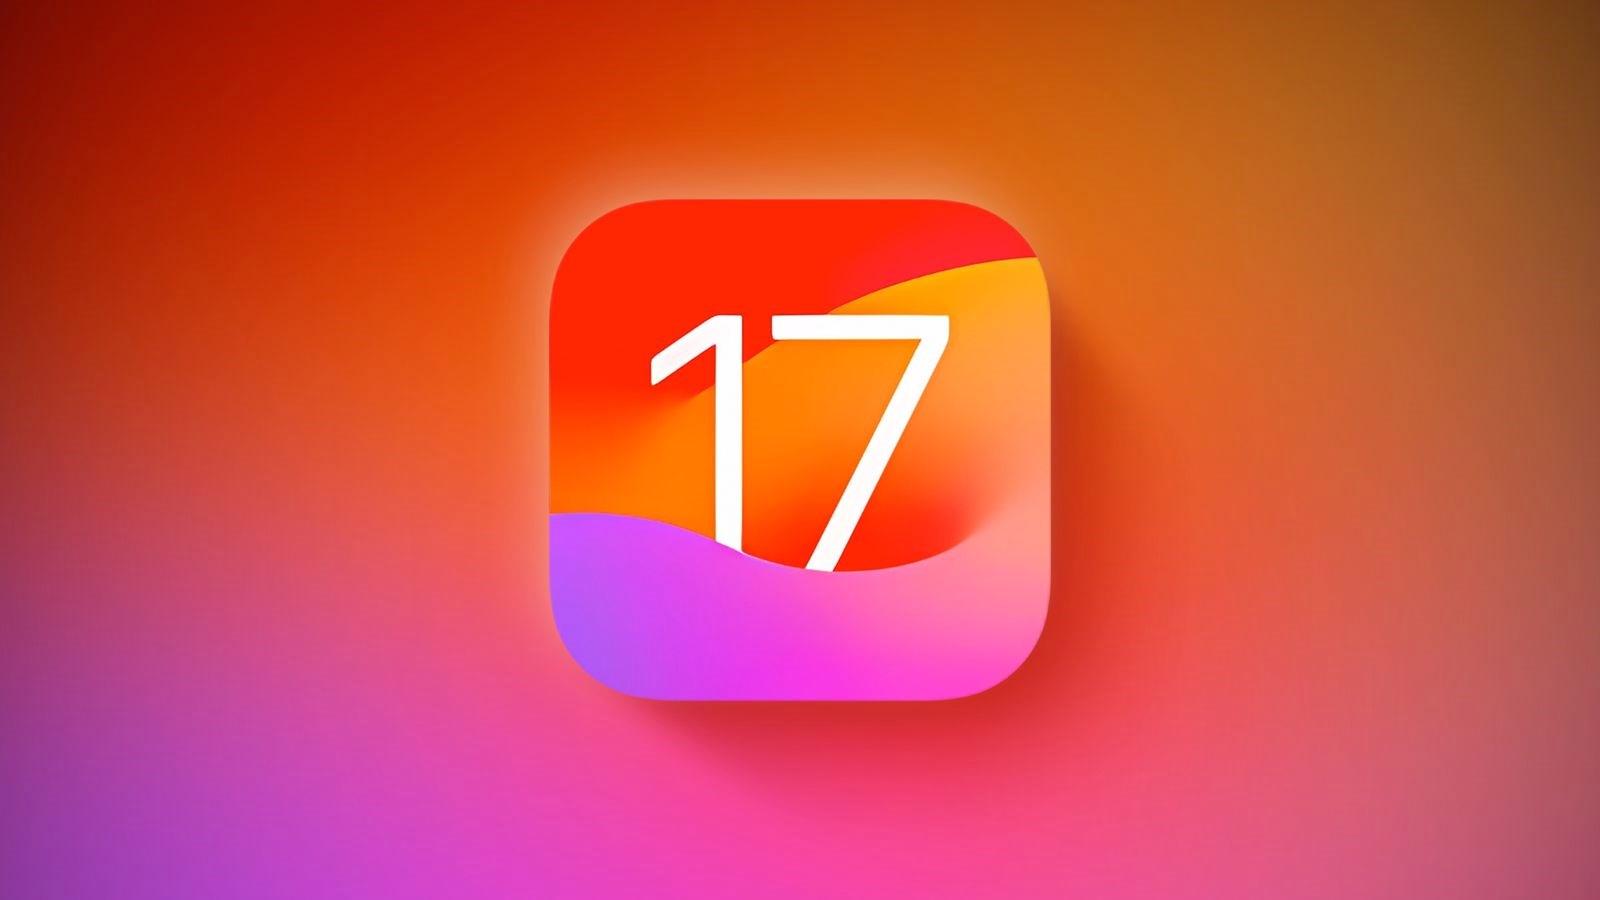 Apple açıkladı: iPhone’ların kaçında iOS 17 yüklü?